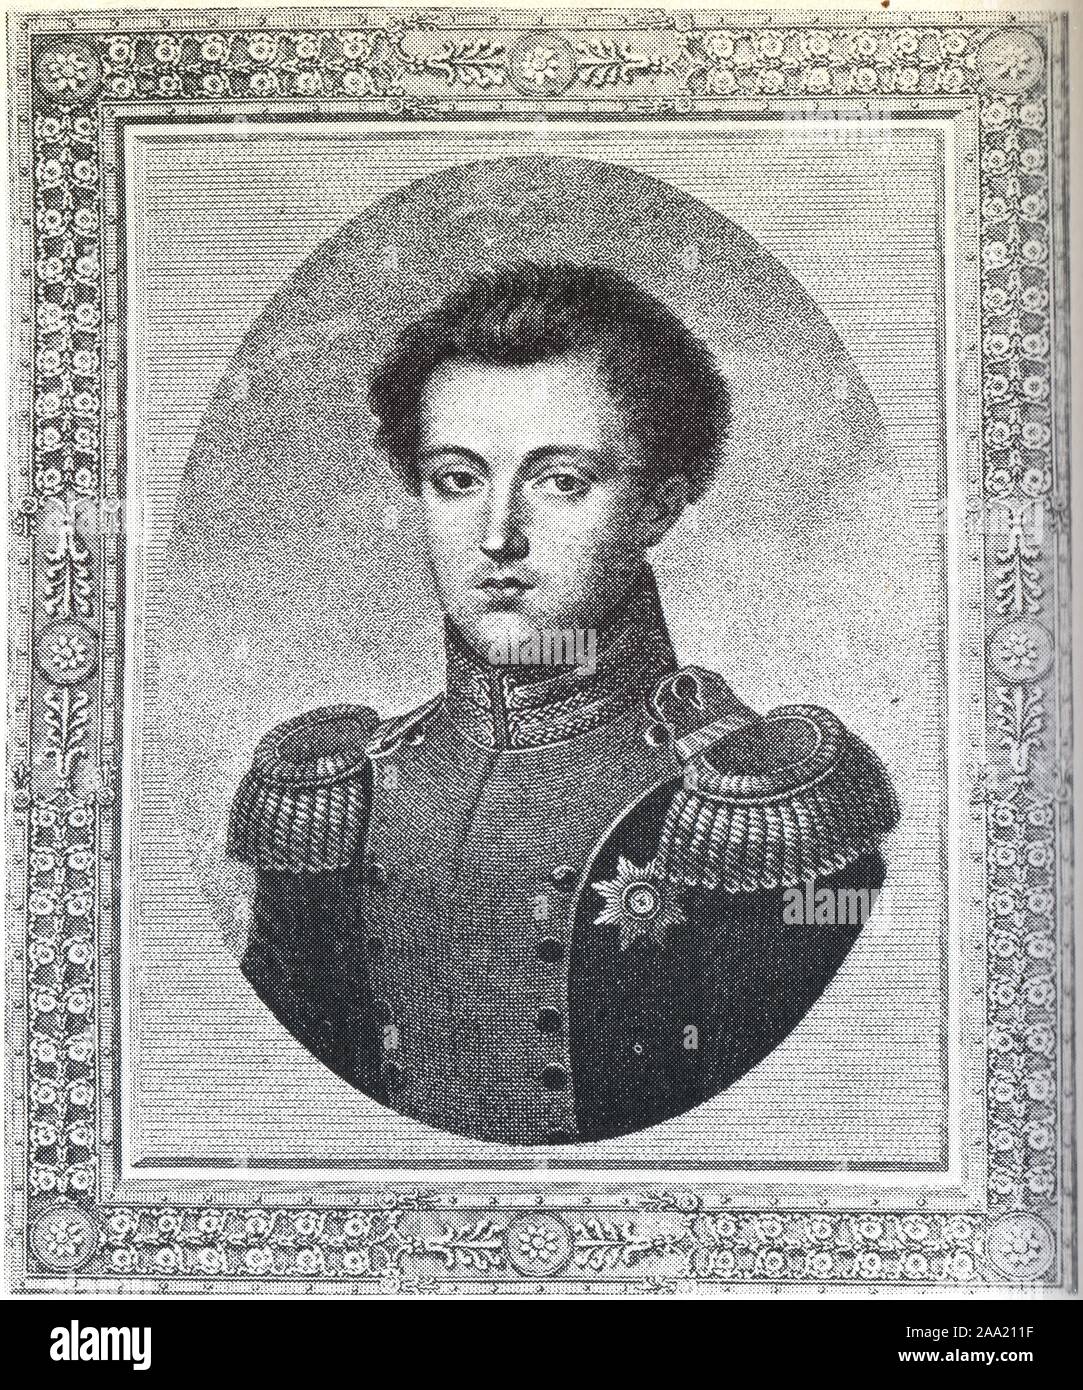 Le Grand-duc Nicolas, frère d'Alexandre Ier. D'après une gravure de l'époque Foto Stock